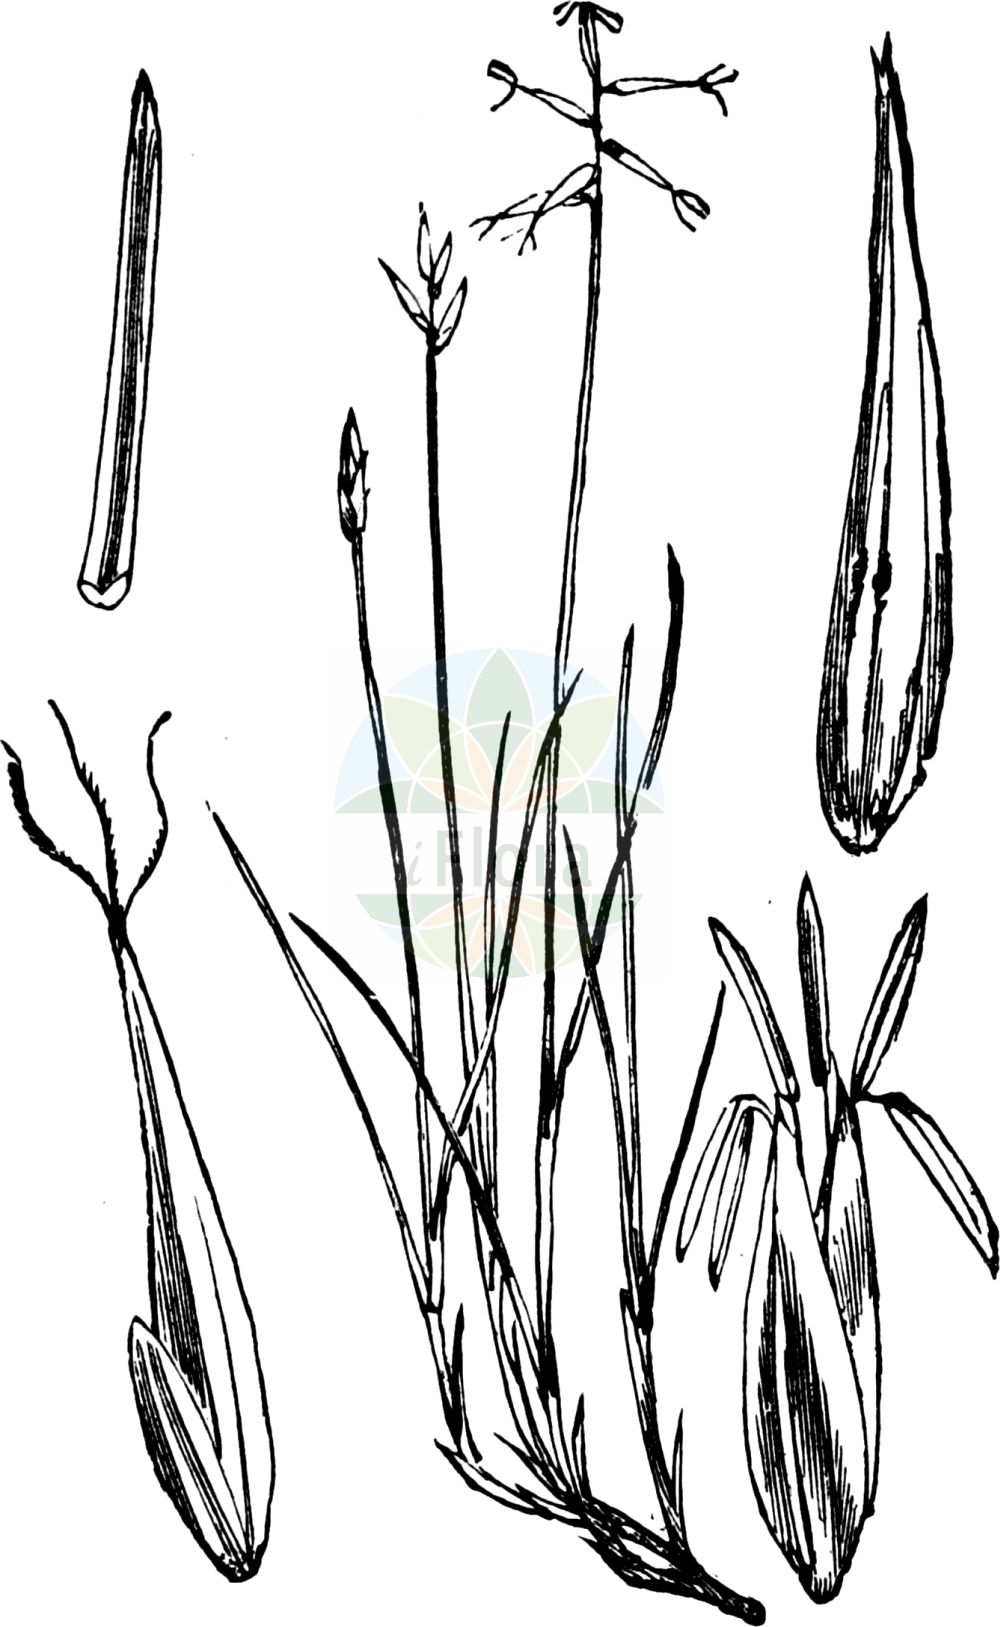 Historische Abbildung von Carex pauciflora (Armblütige Segge - Few-flowered Sedge). Das Bild zeigt Blatt, Bluete, Frucht und Same. ---- Historical Drawing of Carex pauciflora (Armblütige Segge - Few-flowered Sedge). The image is showing leaf, flower, fruit and seed.(Carex pauciflora,Armblütige Segge,Few-flowered Sedge,Carex pauciflora,Armbluetige Segge,Wenigbluetige Segge,Few-flowered Sedge,Fewflower Sedge,Carex,Segge,Sedge,Cyperaceae,Sauergräser,Sedge family,Blatt,Bluete,Frucht,Same,leaf,flower,fruit,seed,Fitch et al. (1880))